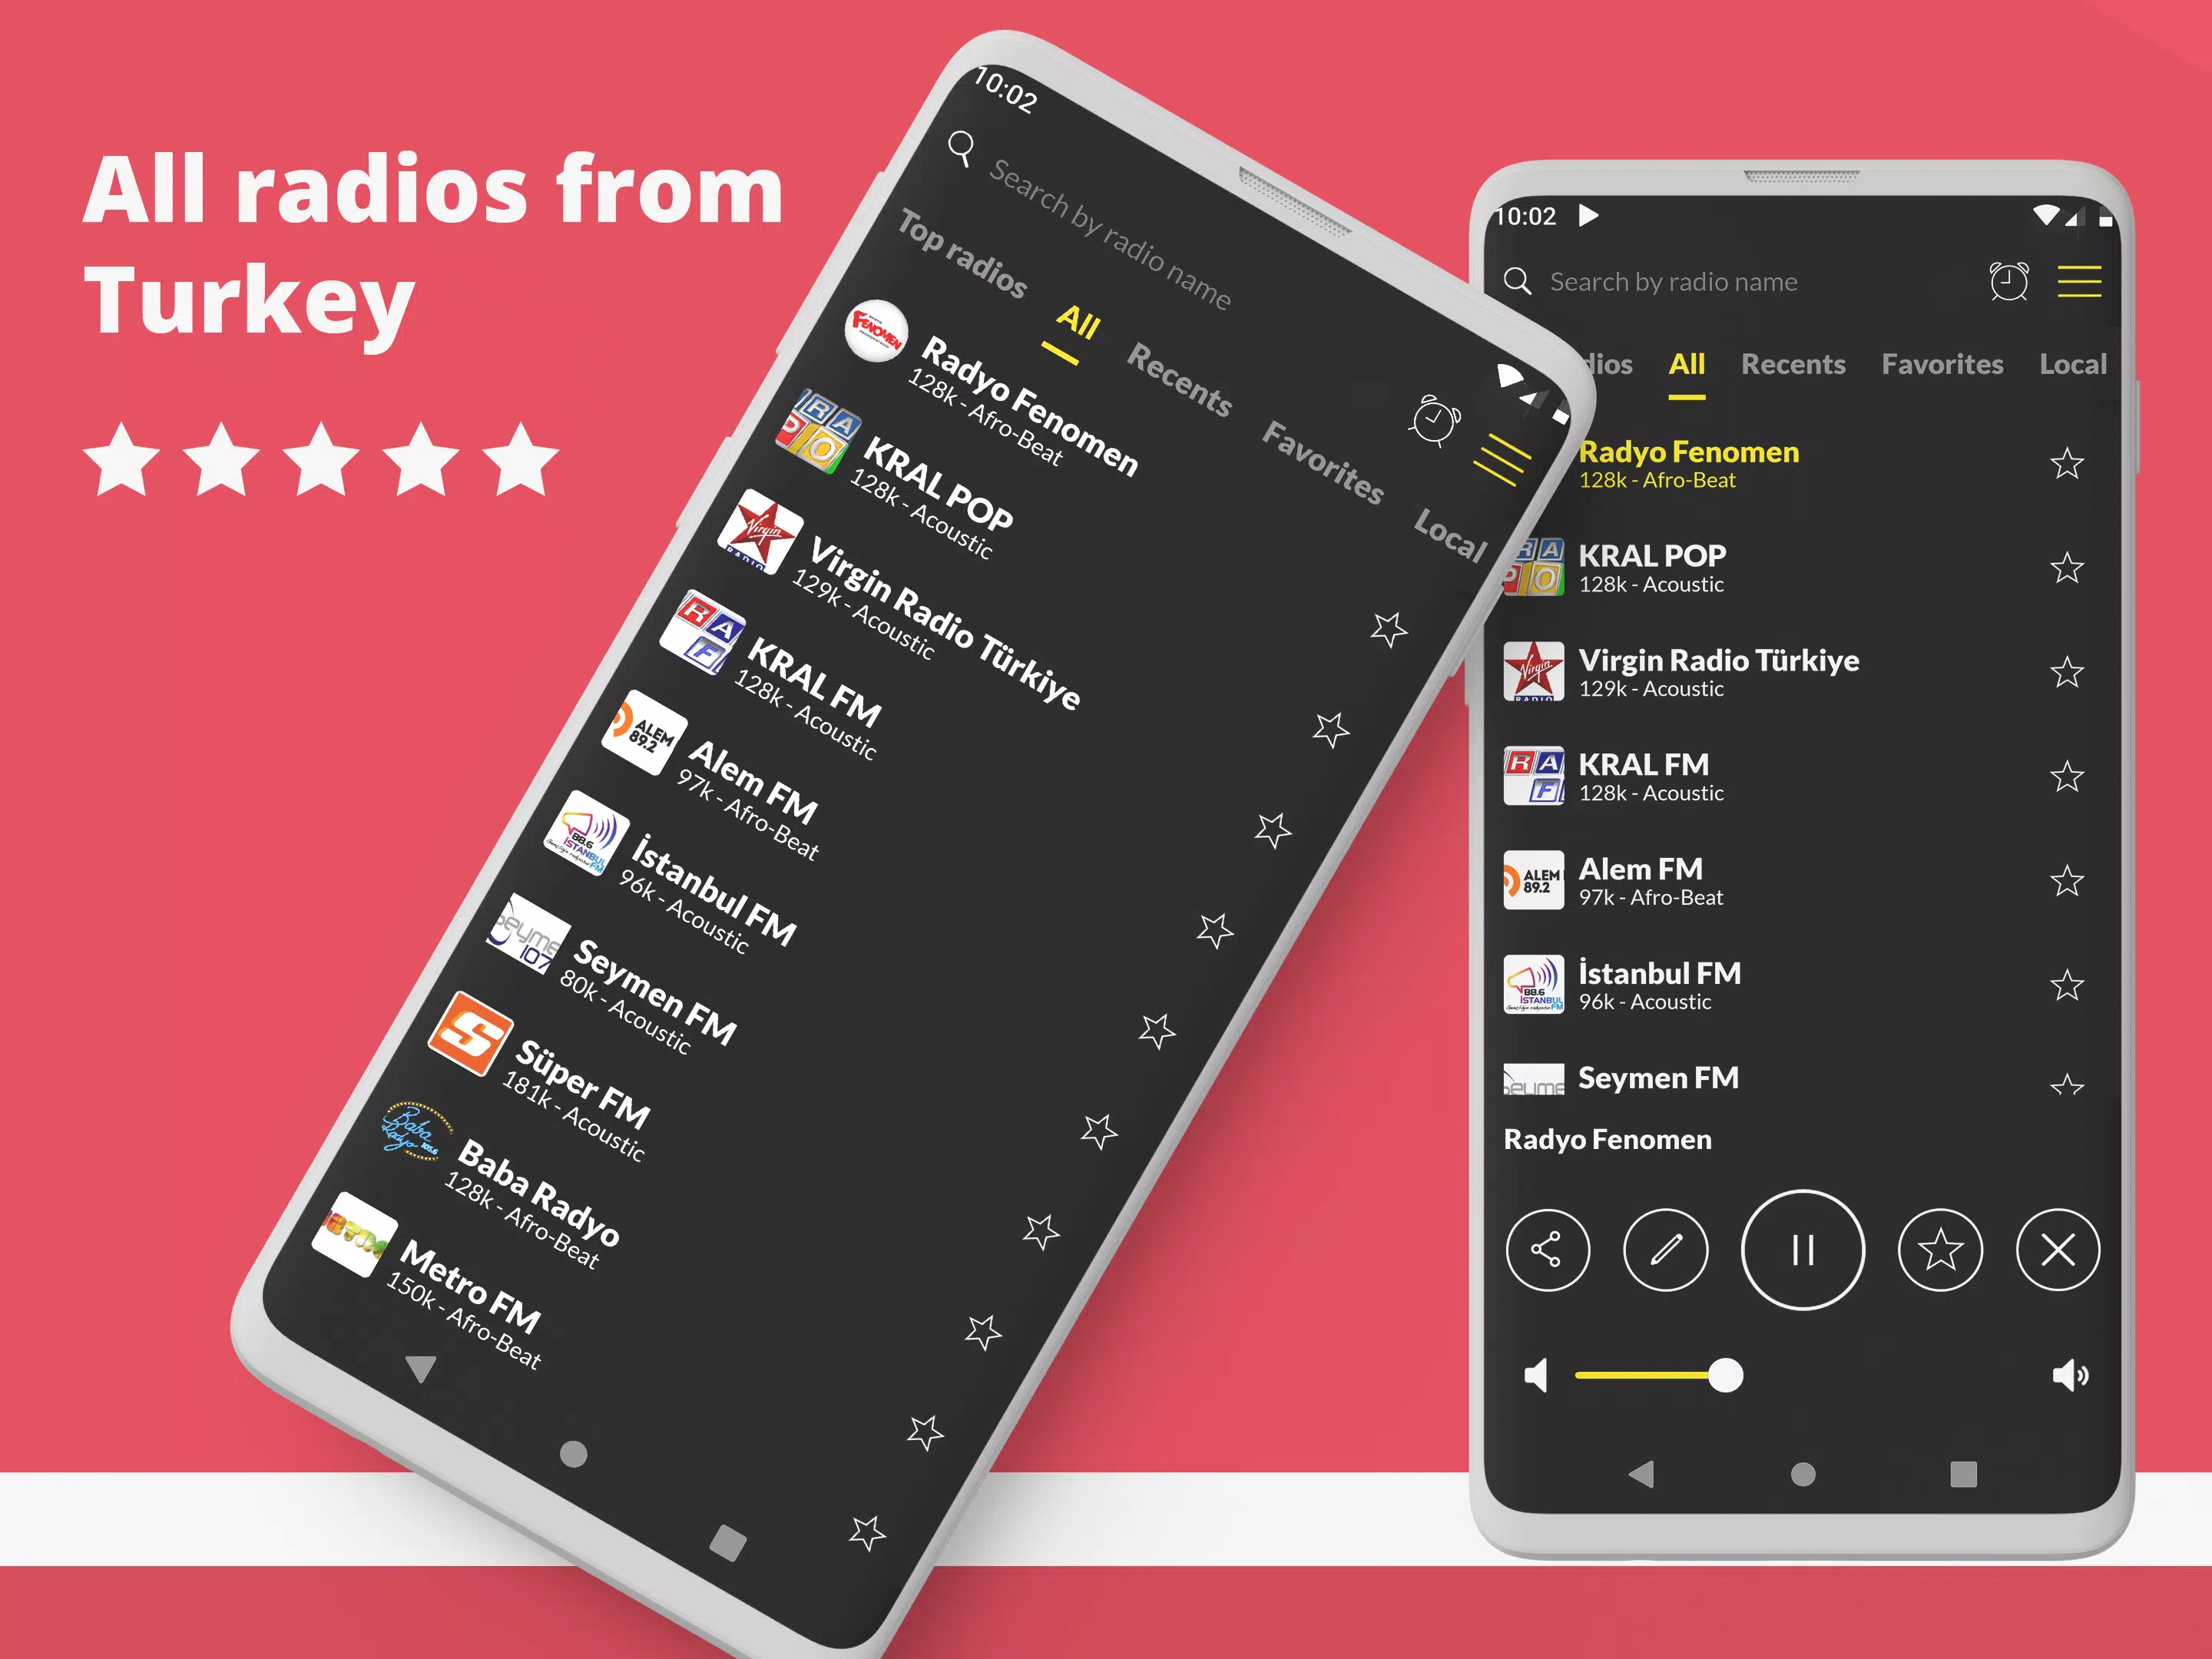 Radyo Türkiye: Online FM Radyo for Android - APK Download